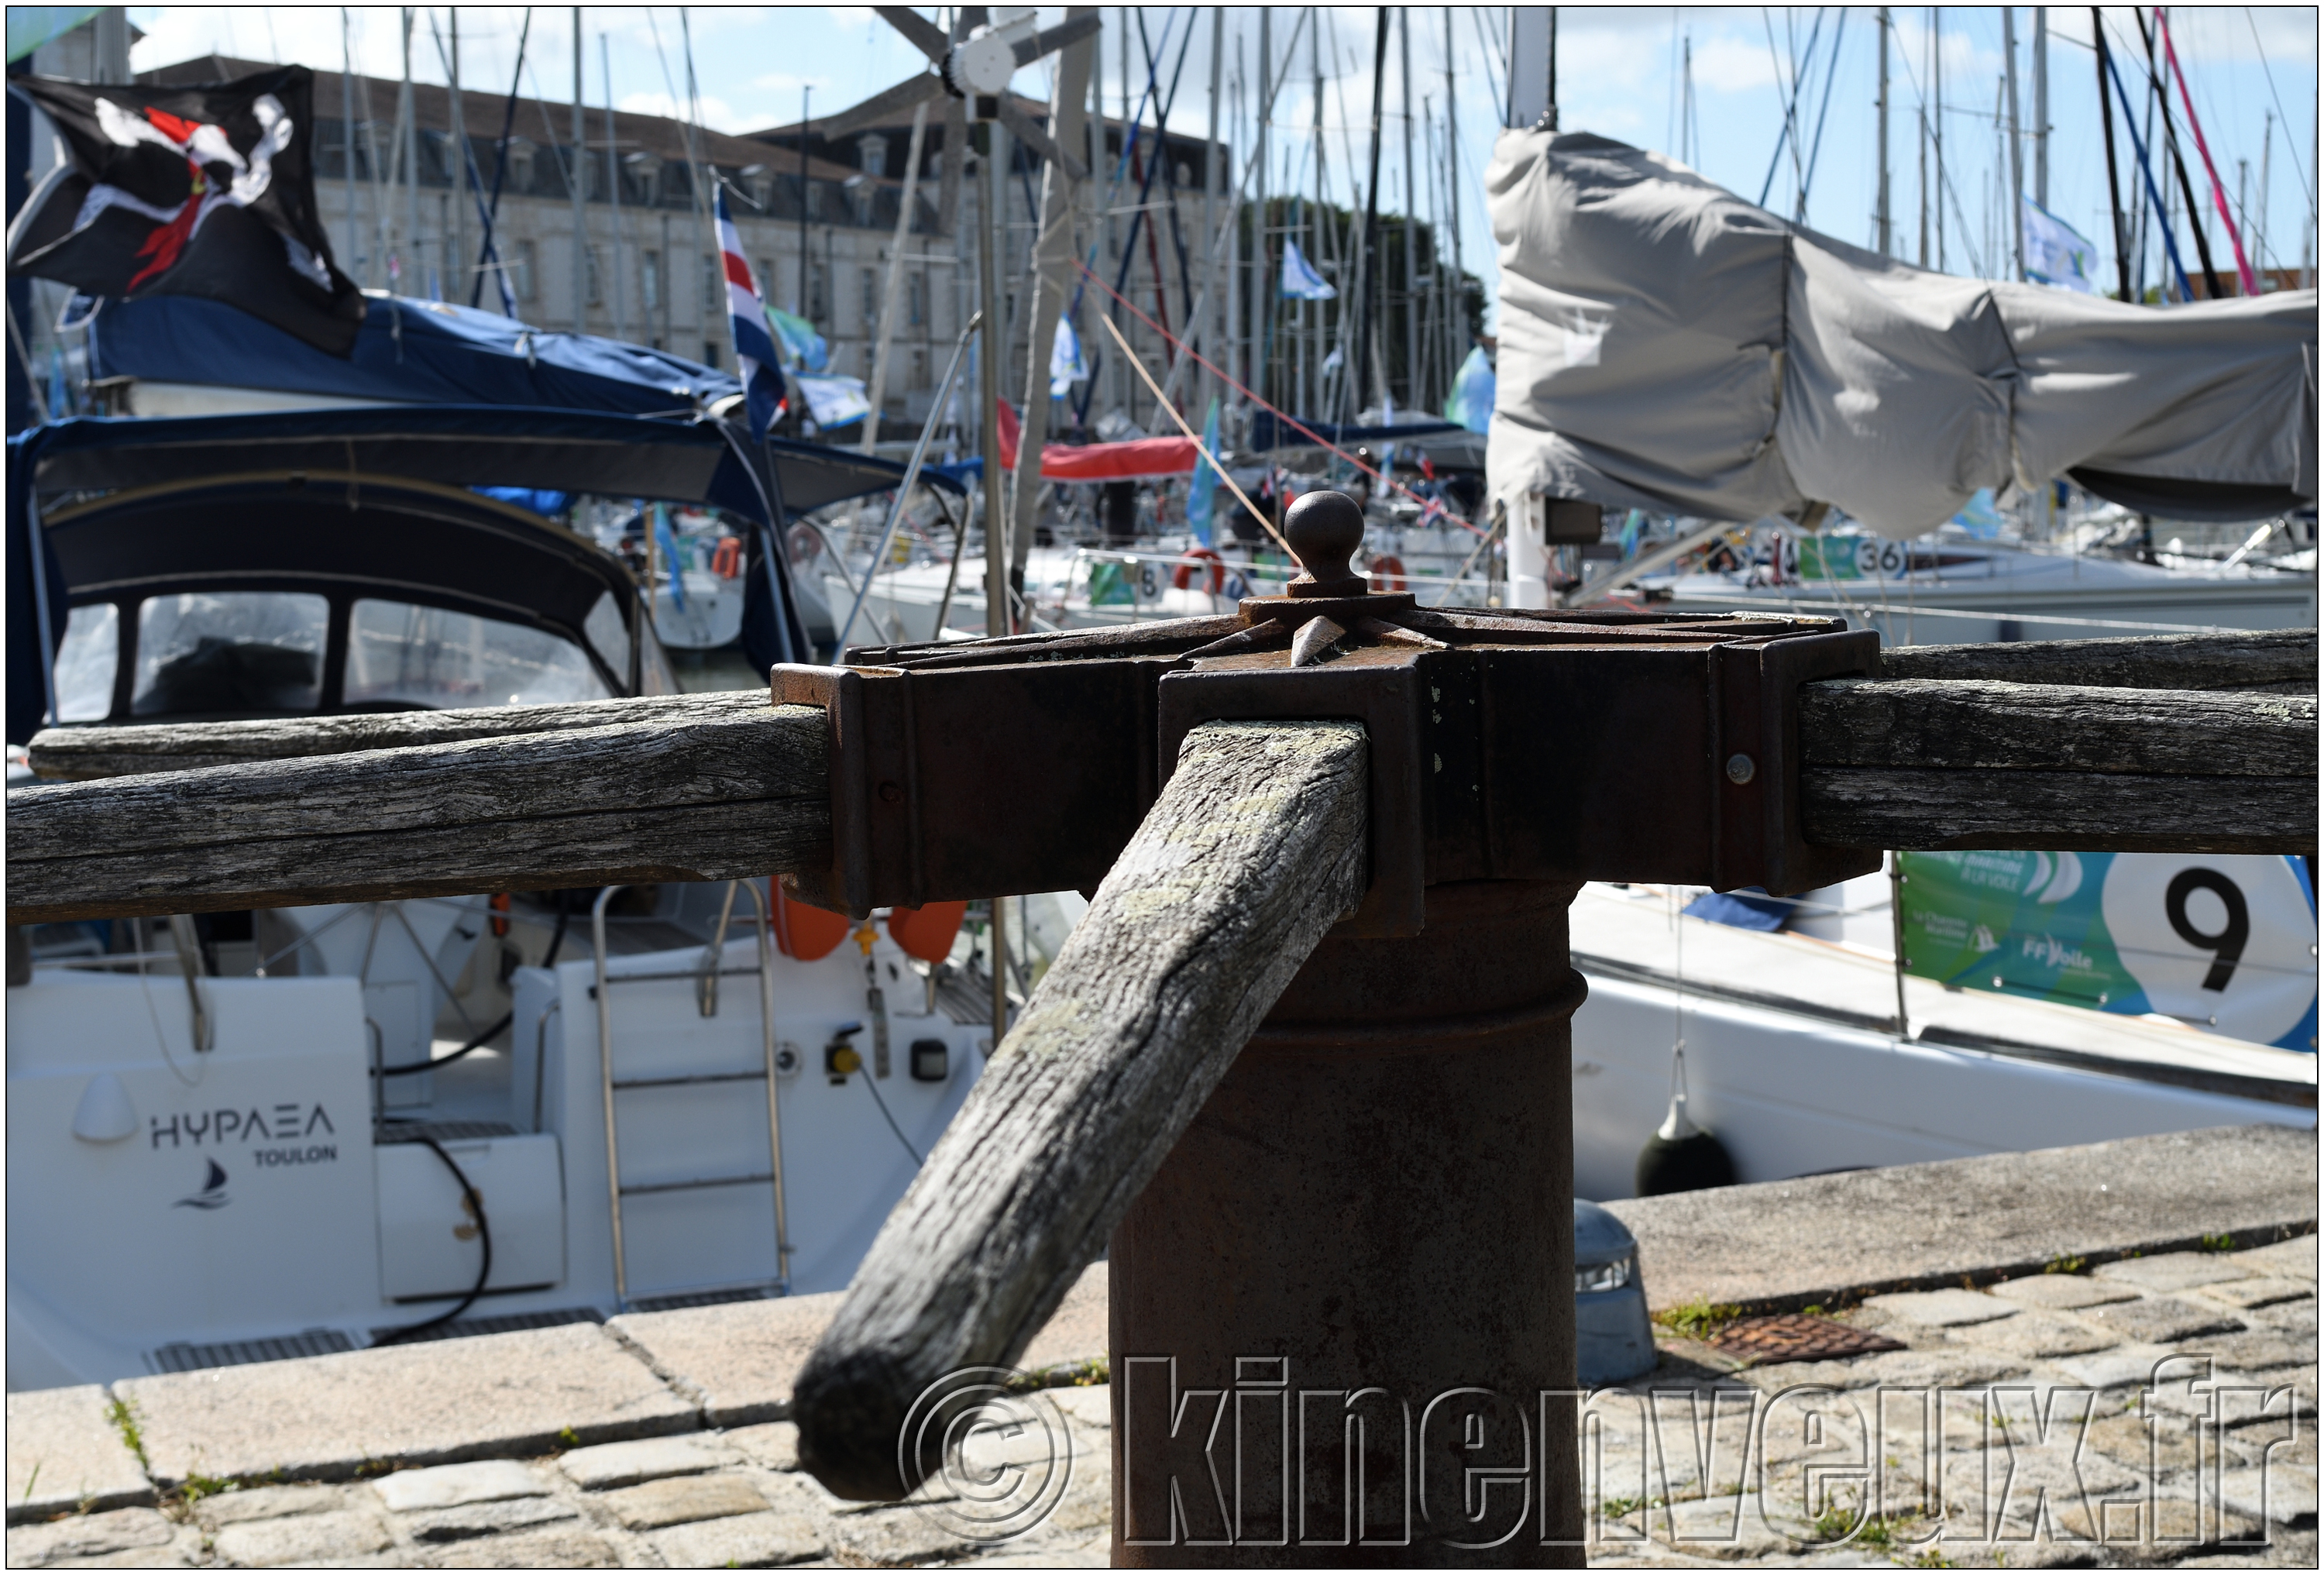 kinenveux_TourVoile17_30.jpg - Escale a Rochefort sur Mer